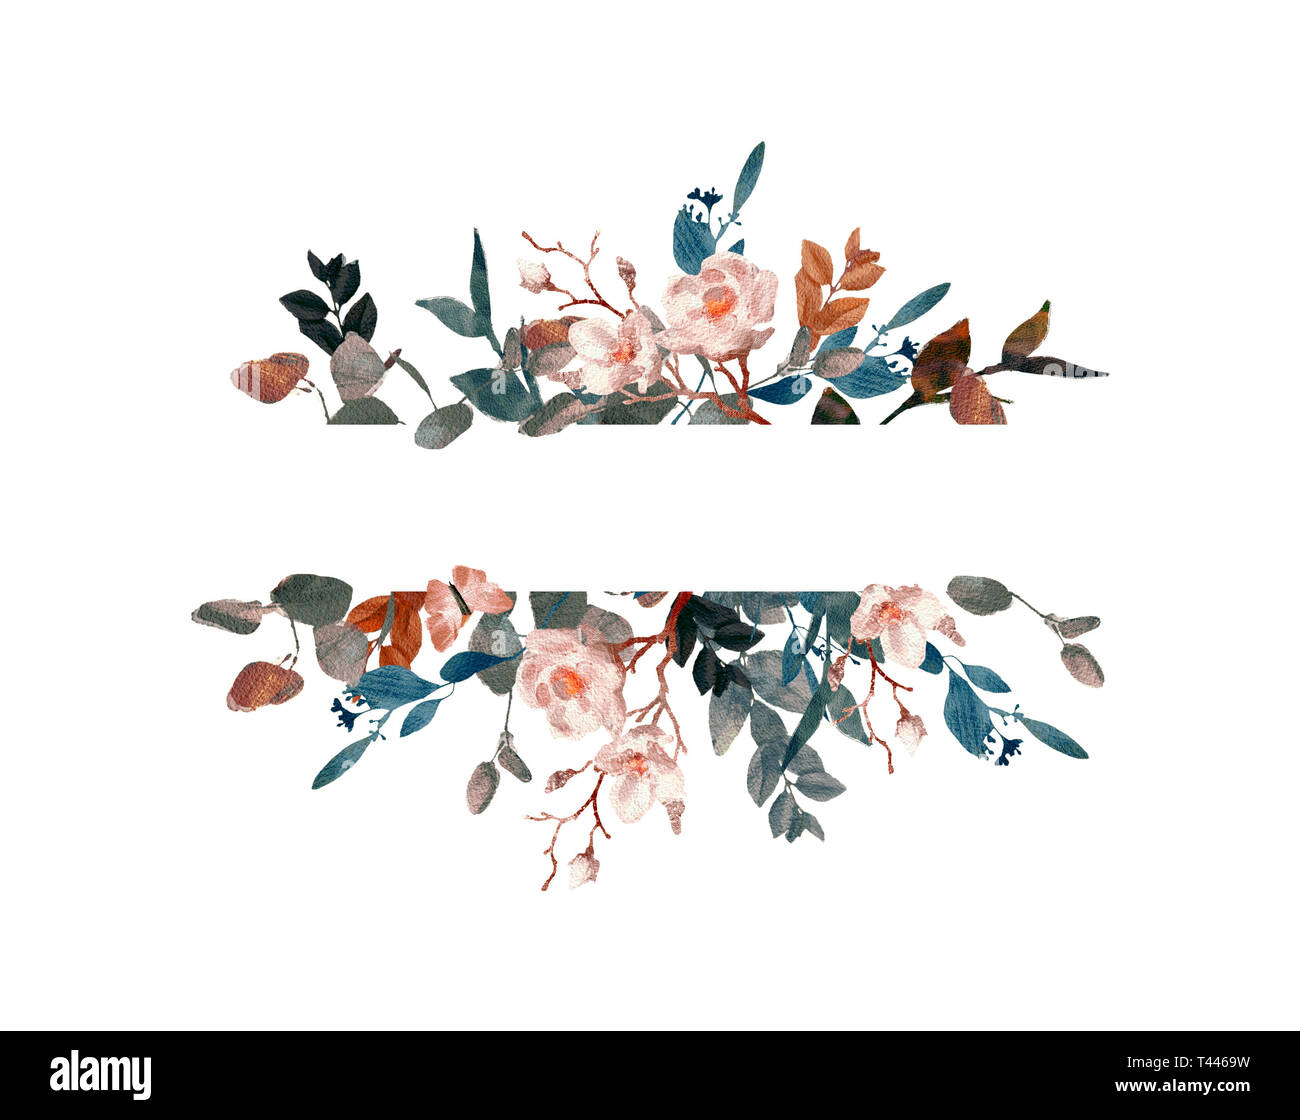 Handgemalten Aquarell blumen Kranz auf weißem Hintergrund. Kranz, Floral  frame, Aquarell Blumen, Rosen, Pfingstrosen und Abbildung von Hand gemalt  Stockfotografie - Alamy